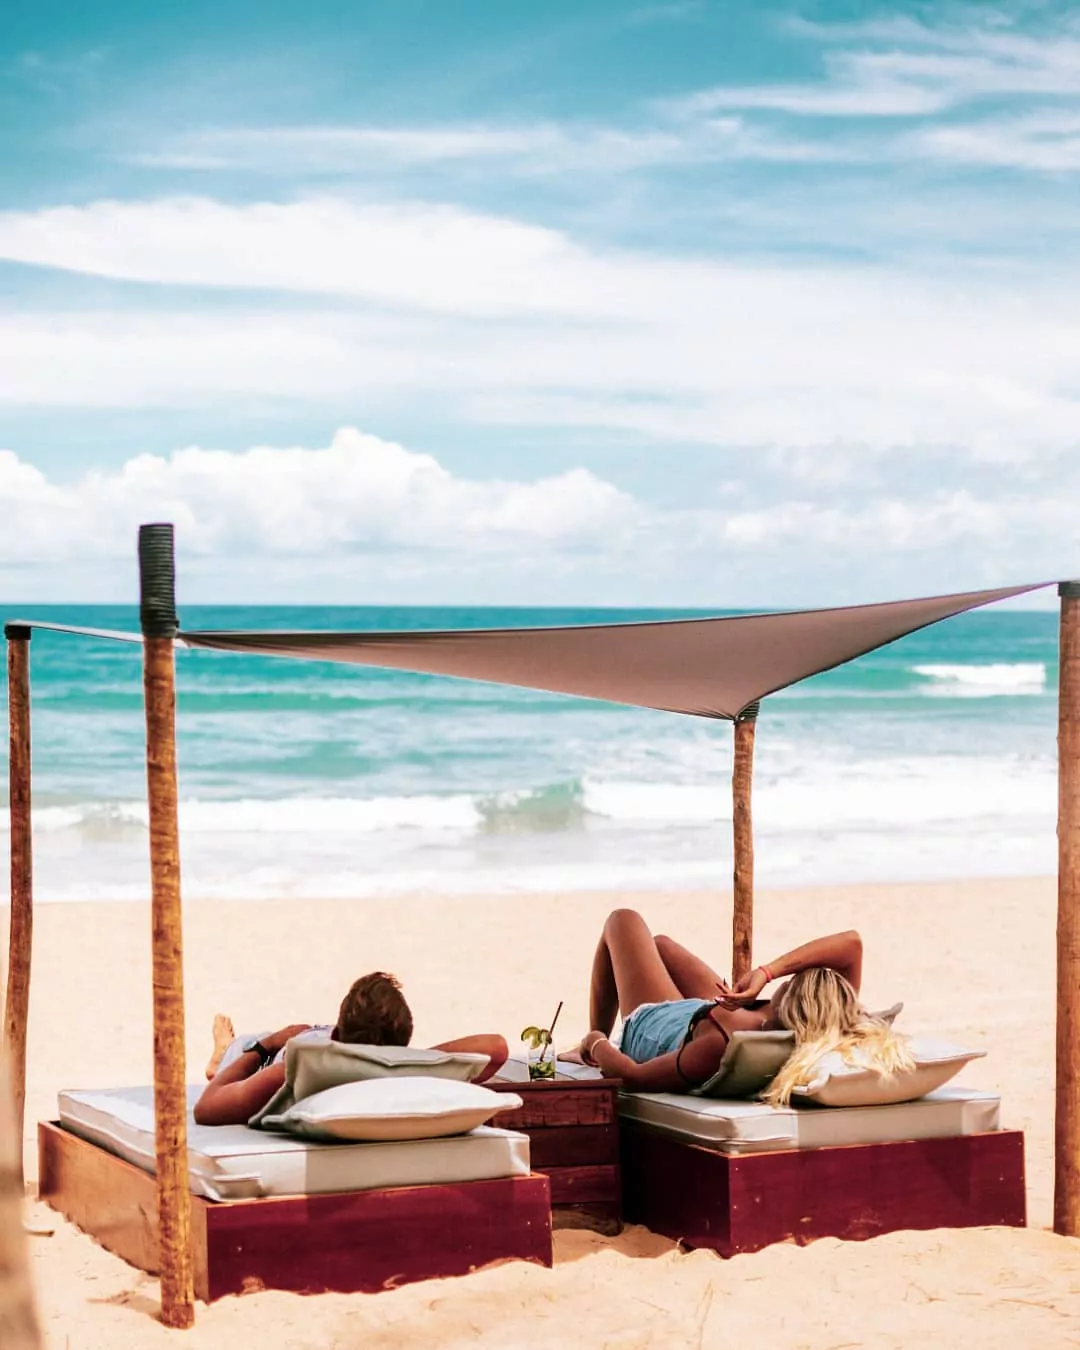 Casal deitado em cadeiras cobertas por uma tenda na praia da Península de Maraú.